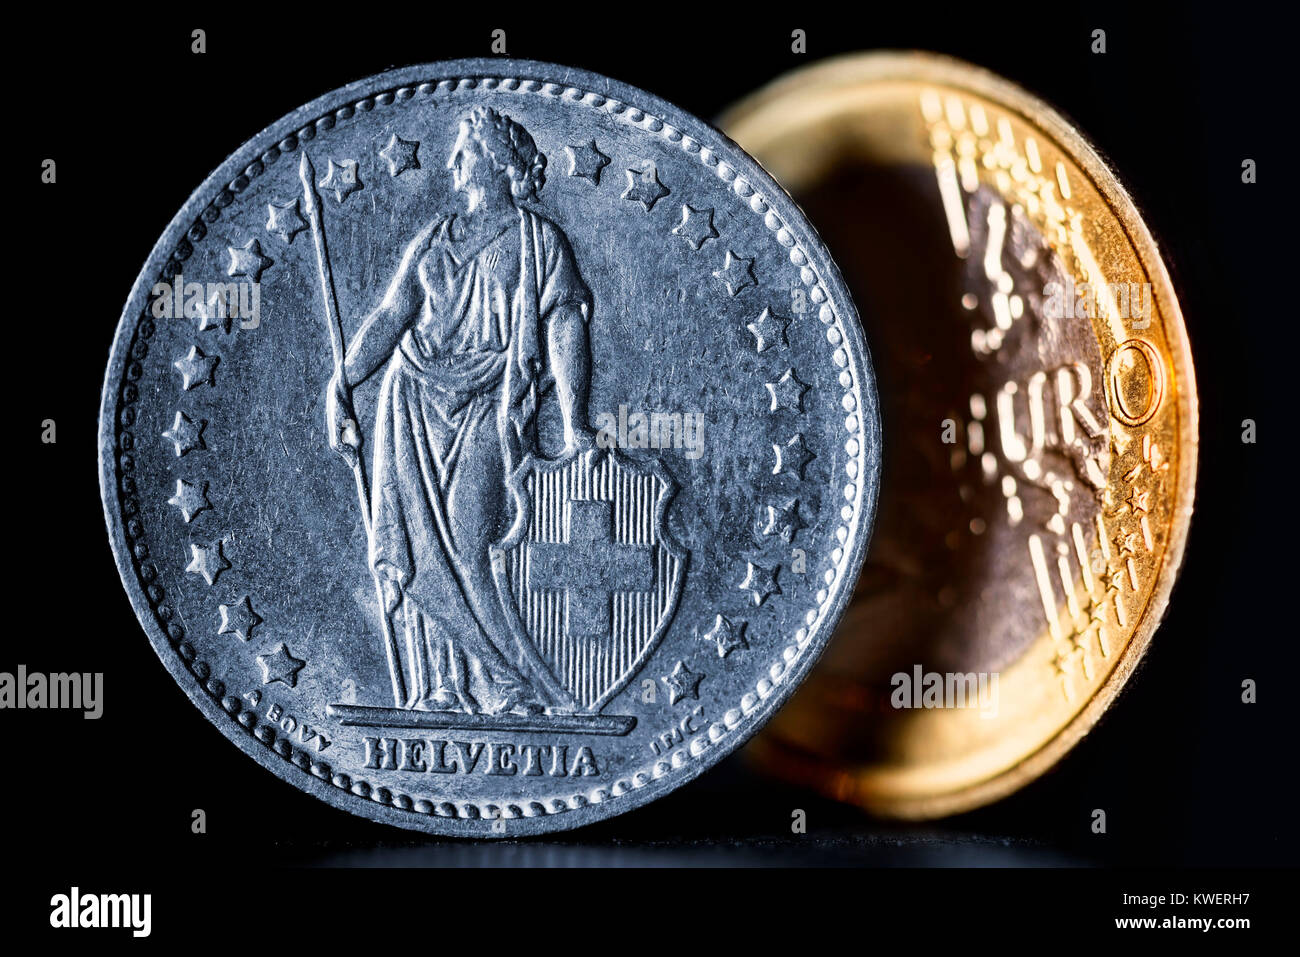 Le franc suisse et l'euro, la fin de la franc-moins, bien entendu, de l'euro, Schweizer Franken und Euro, Beendigung des Franken-Mindestkurses zum Euro Banque D'Images